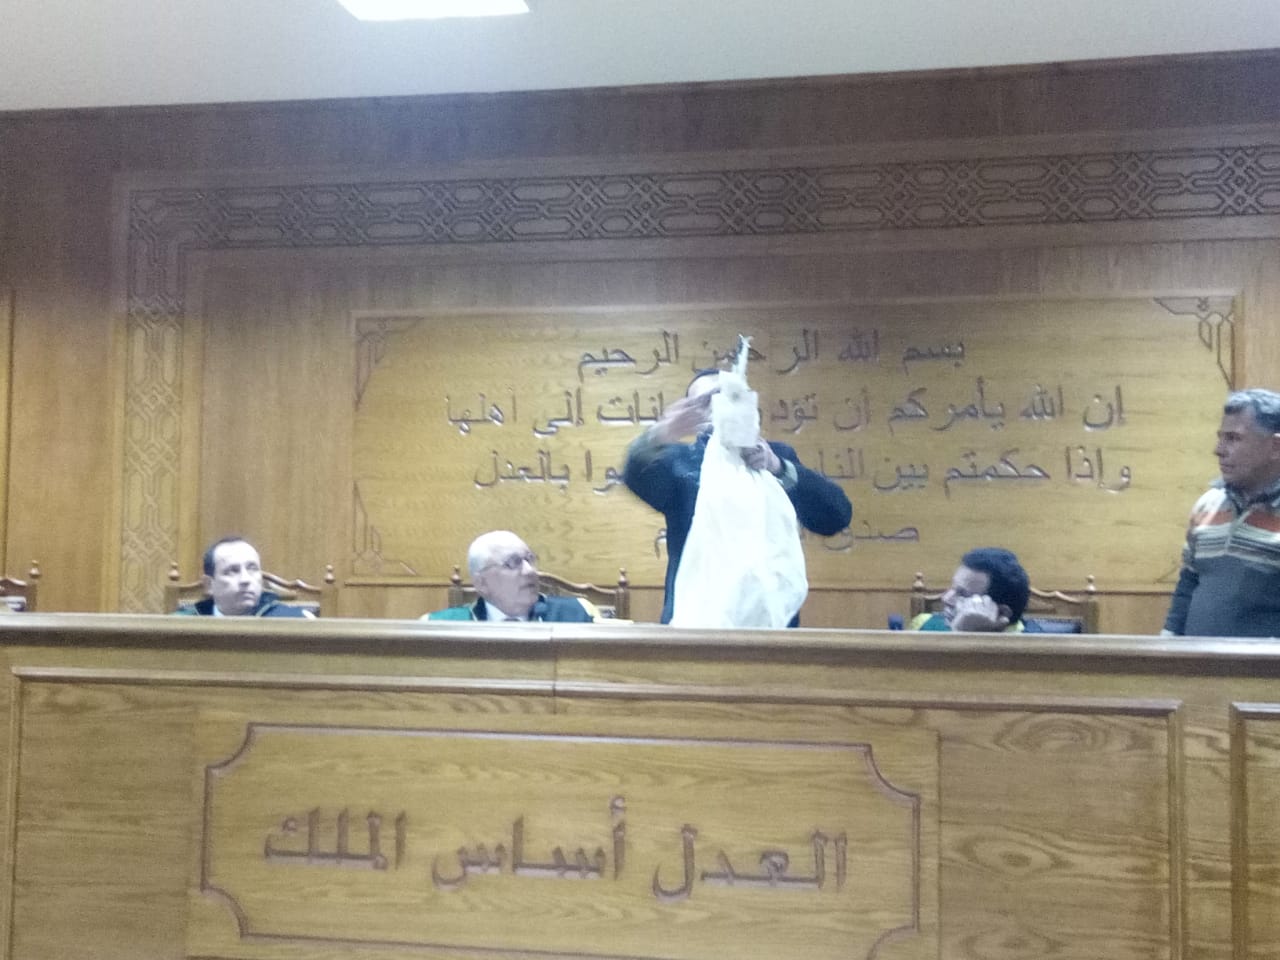 هيئة المحكمة برئاسة المستشار محمد سعيد الشربينى تفض احراز العائدون من ليبيا (9)